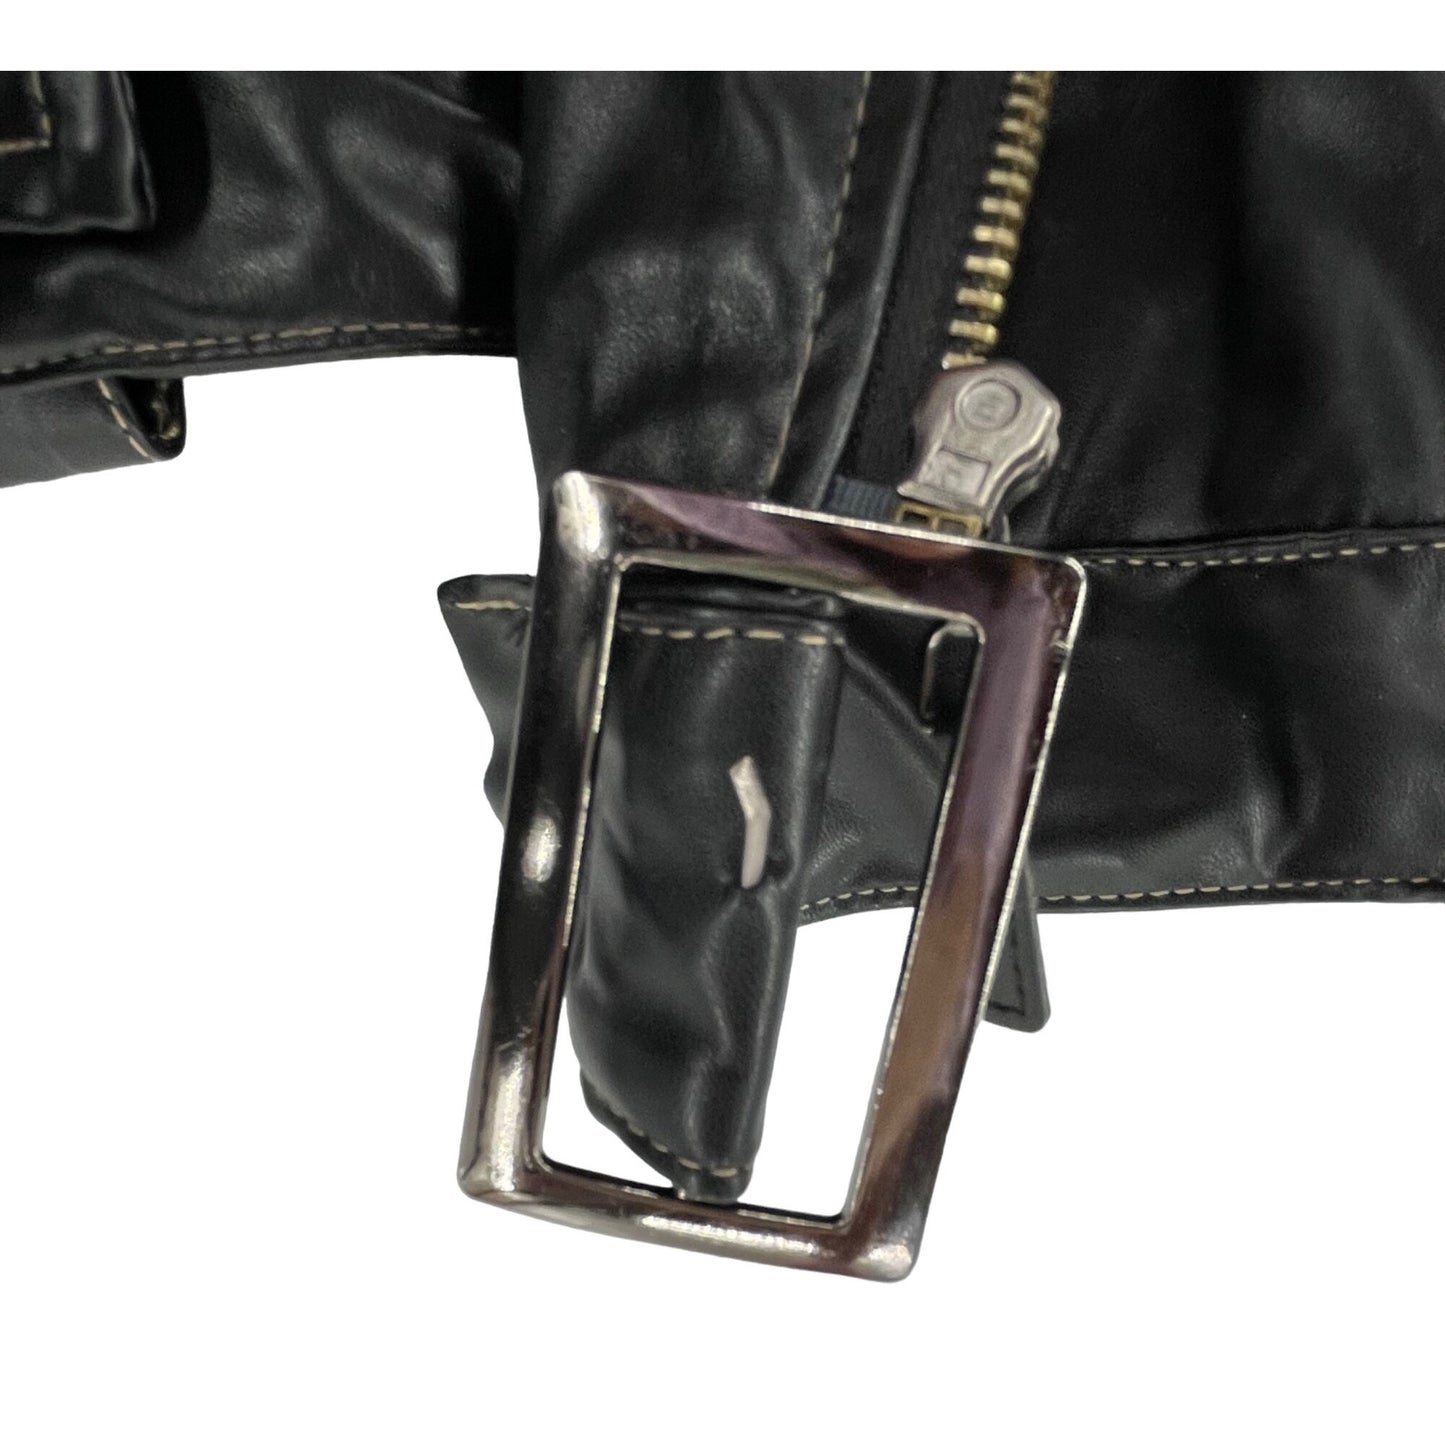 Women's Size 4XL Black Patent Vinyl Faux Leather Moto Chic Jacket